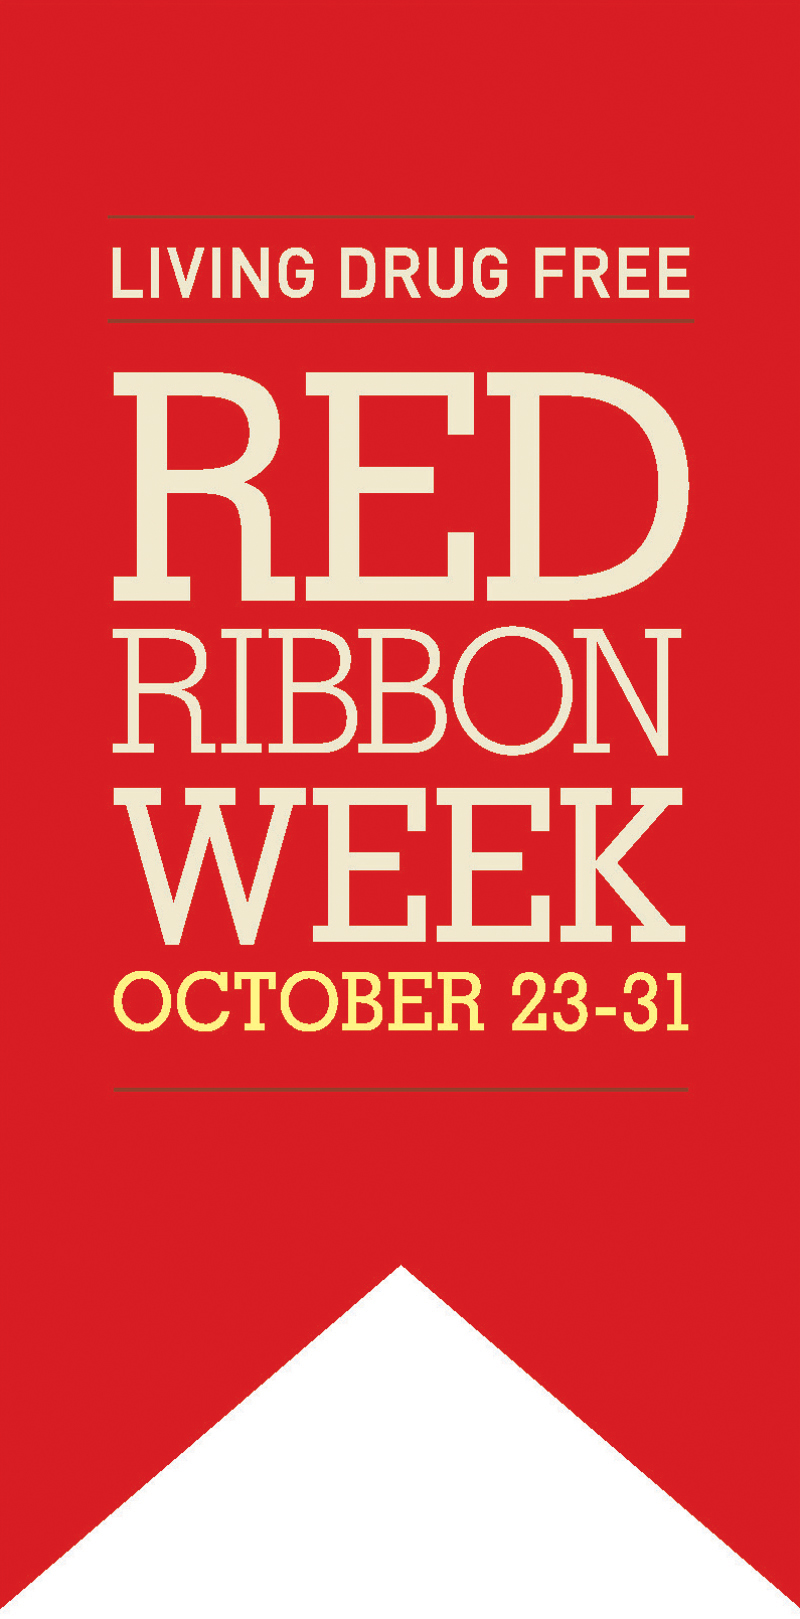 Bộ công cụ Tuần Lễ Red Ribbon là một tài nguyên vô cùng hữu ích để hỗ trợ các hoạt động và sự kiện trong tuần lễ này. Với các công cụ chuyên nghiệp và tiện lợi, bạn sẽ có thể tổ chức một sự kiện tuyệt vời và ý nghĩa cho cộng đồng của mình.